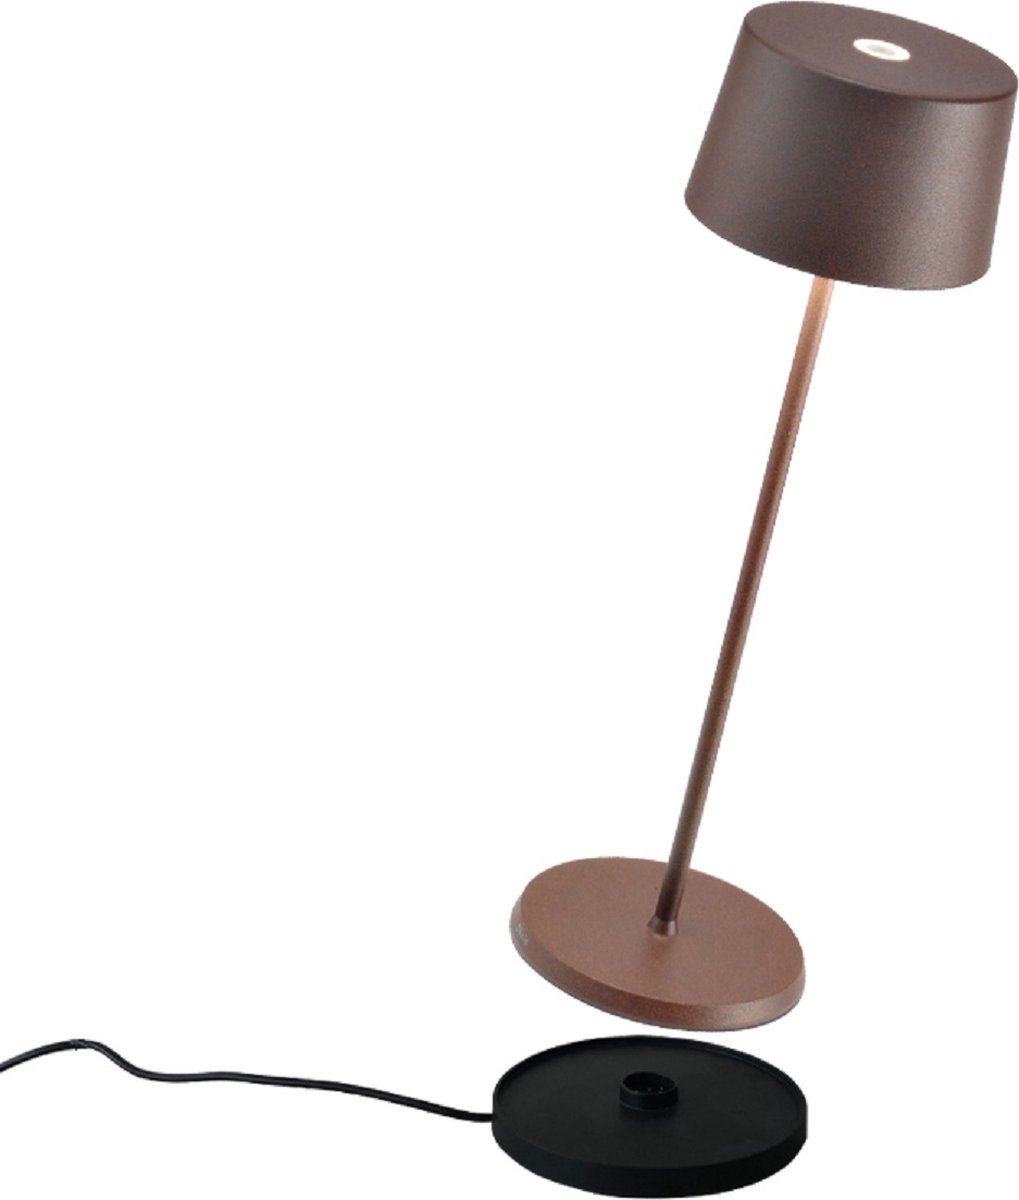 Zafferano - Olivia - Bruin/ Roest - H35.5cm - Ledlamp - Bureaulamp – Tafellamp – Snoerloos – Verplaatsbaar – Duurzaam - Voor binnen en buiten – LED - Dimbaar - 3000K - IP65 Spat Waterdicht - USB oplaadbaar